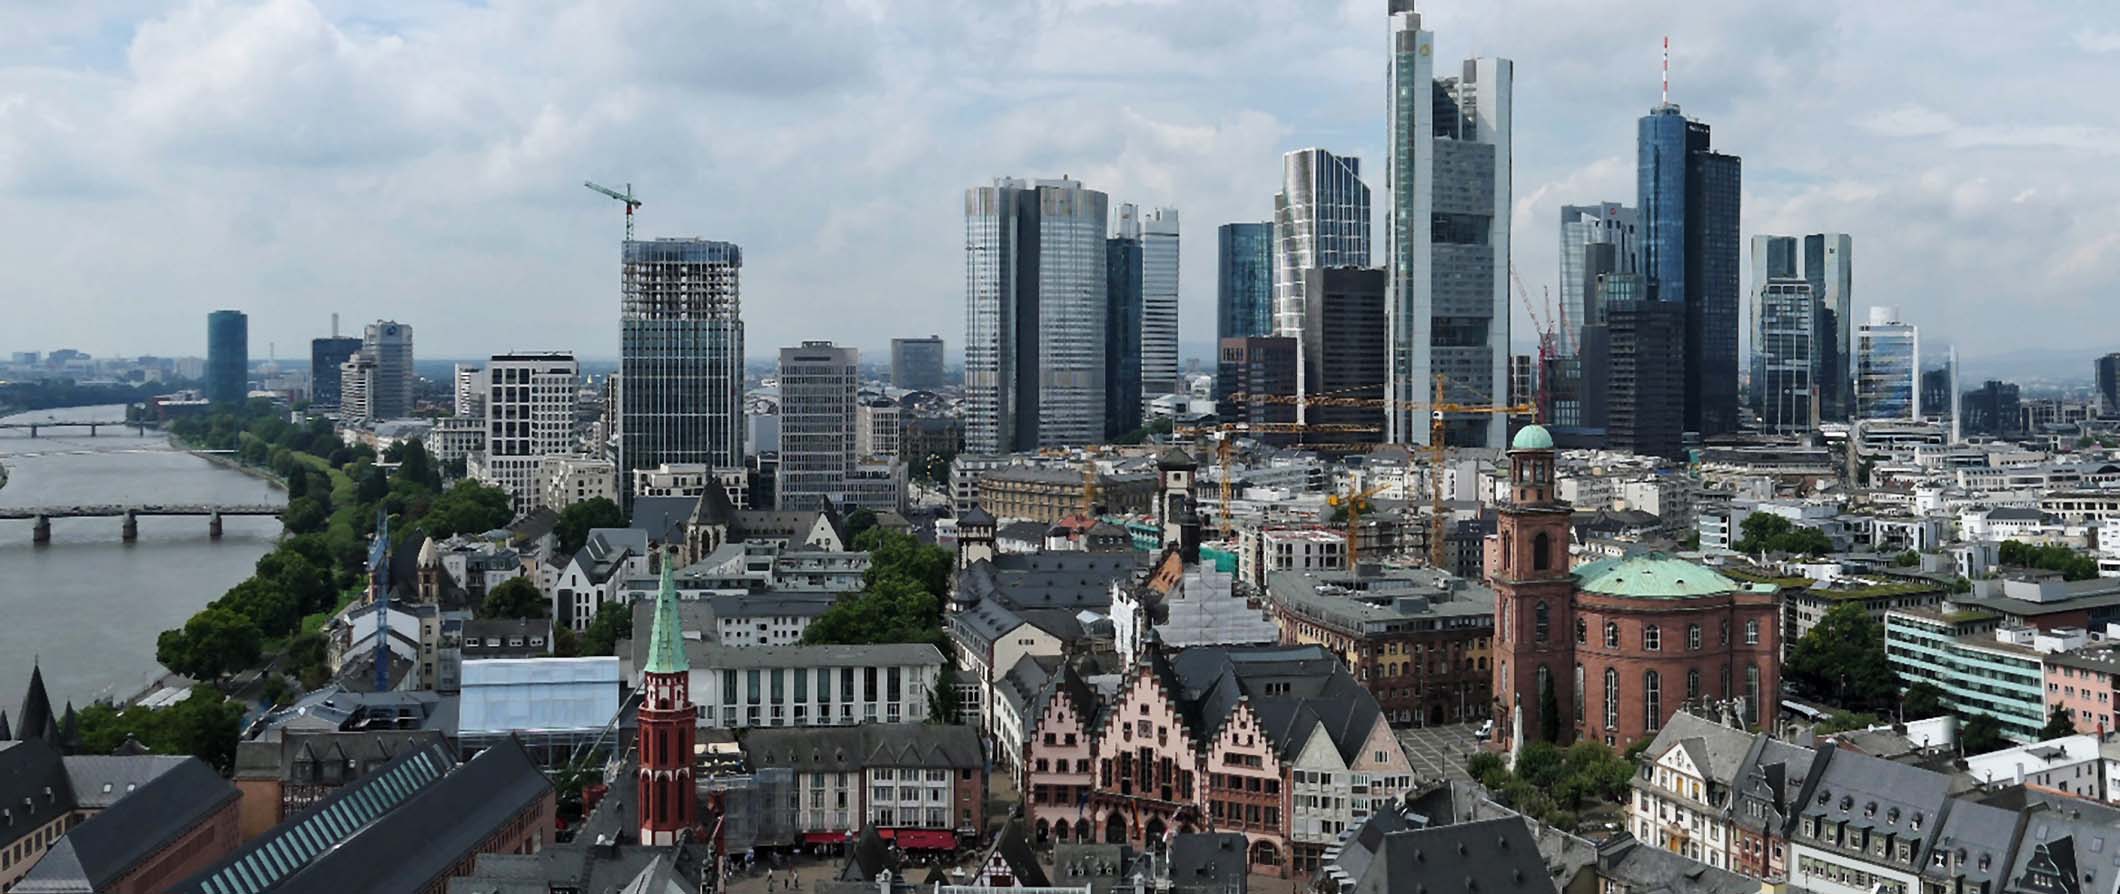 Vista aérea do centro de Frankfurt, Alemanha, com numerosos arranha-céus